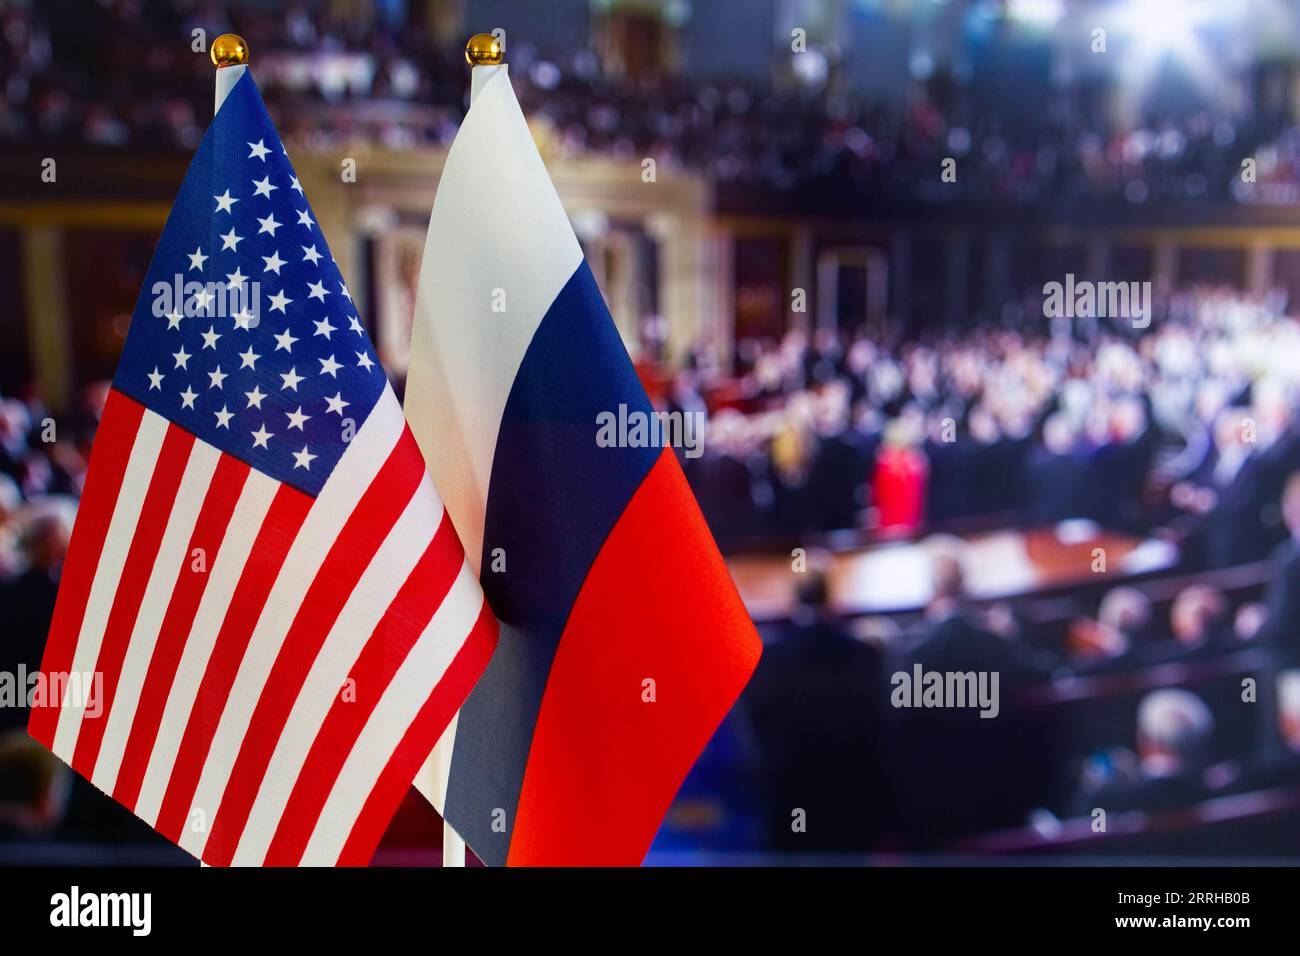 Die US-Flagge, die russische Flagge mit Platz für Text. Flagge der USA, Flagge Russlands. Die Konfrontation zwischen den Vereinigten Staaten von Amerika und der Russischen Föderation Stockfoto